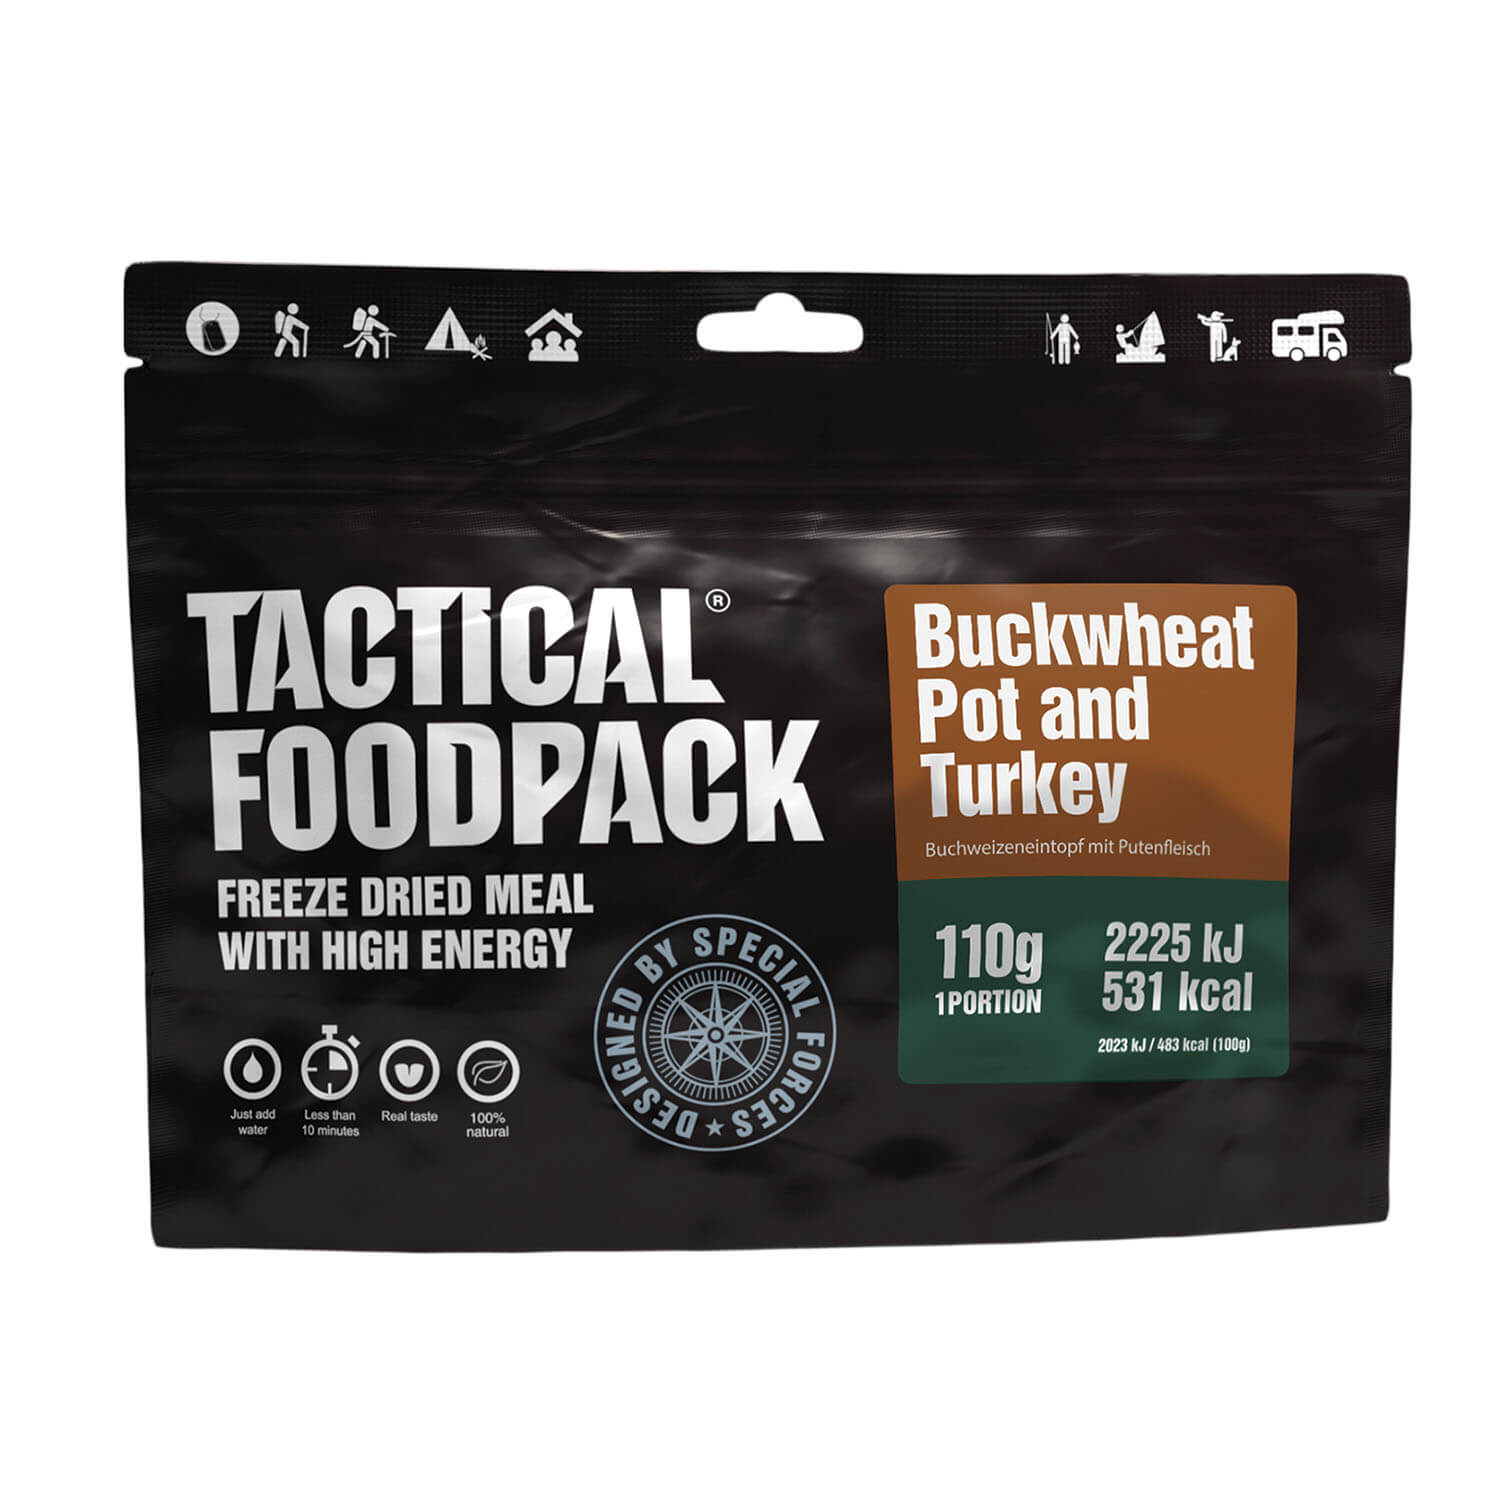 Tactical Foodpack Boekweitpot en Kalkoen